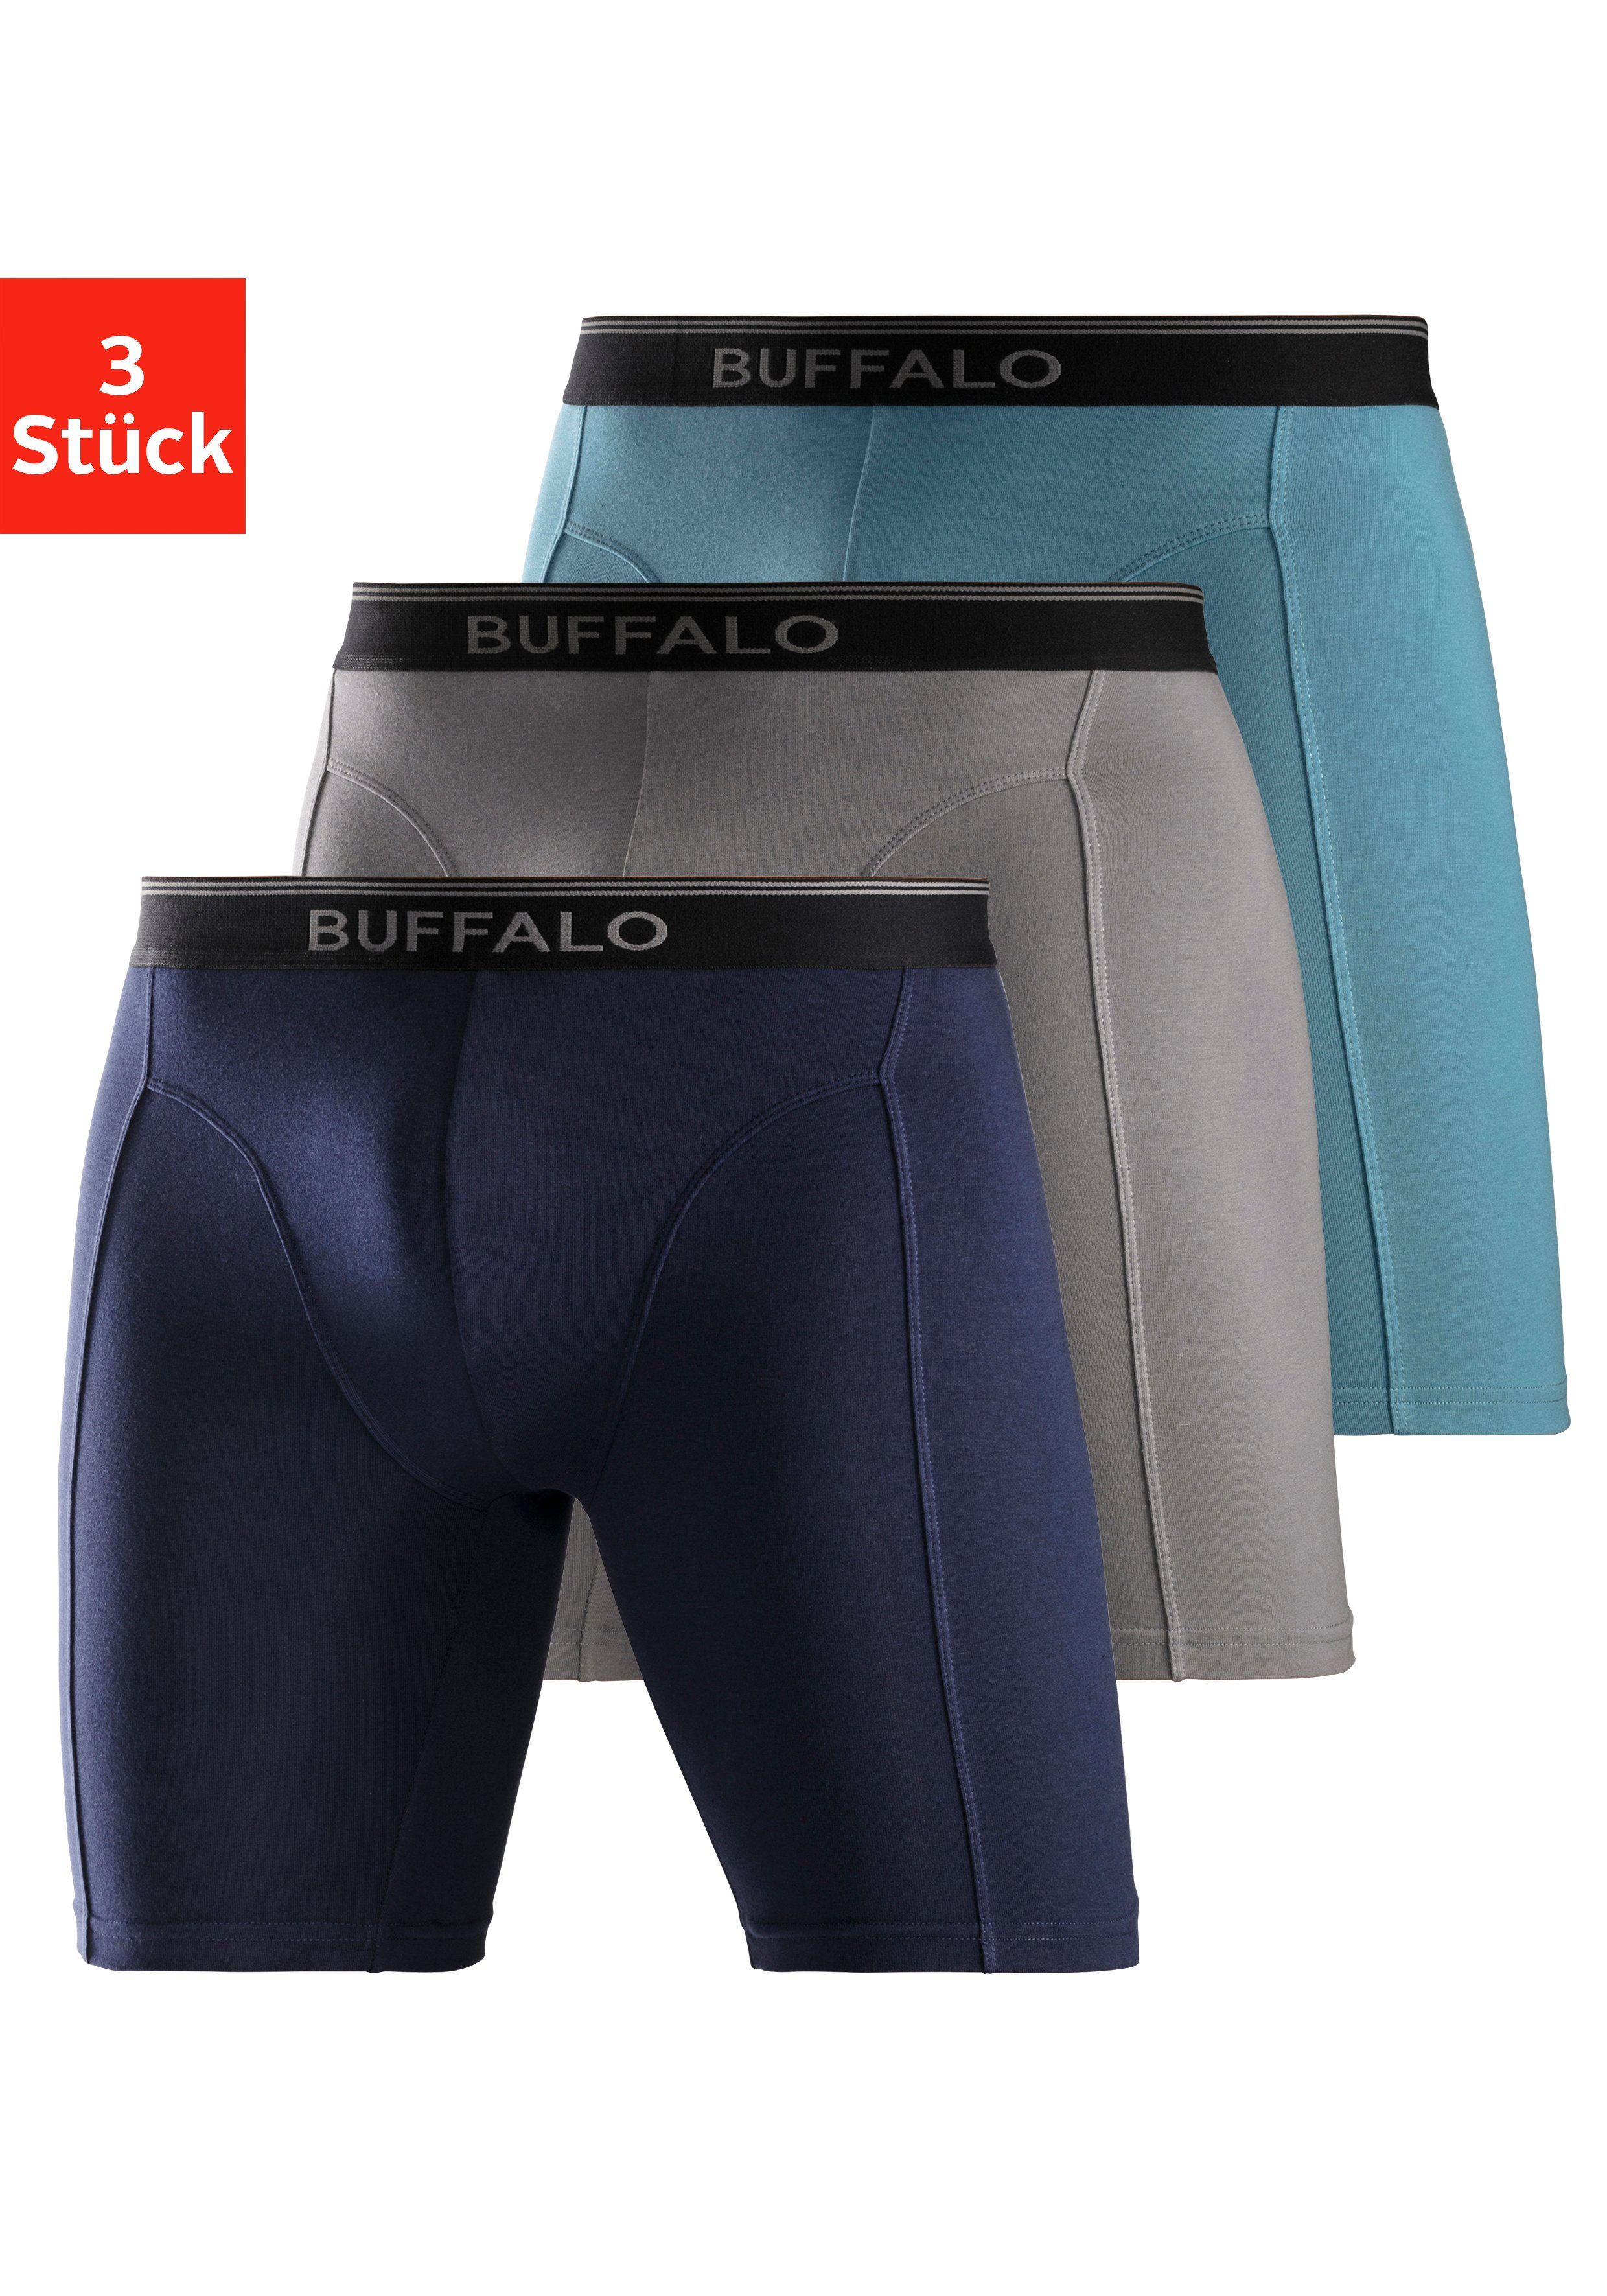 Buffalo Boxer (Packung, 3-St) in langer Form ideal auch für Sport und Trekking aquablau, grau, navy | Boxer anliegend